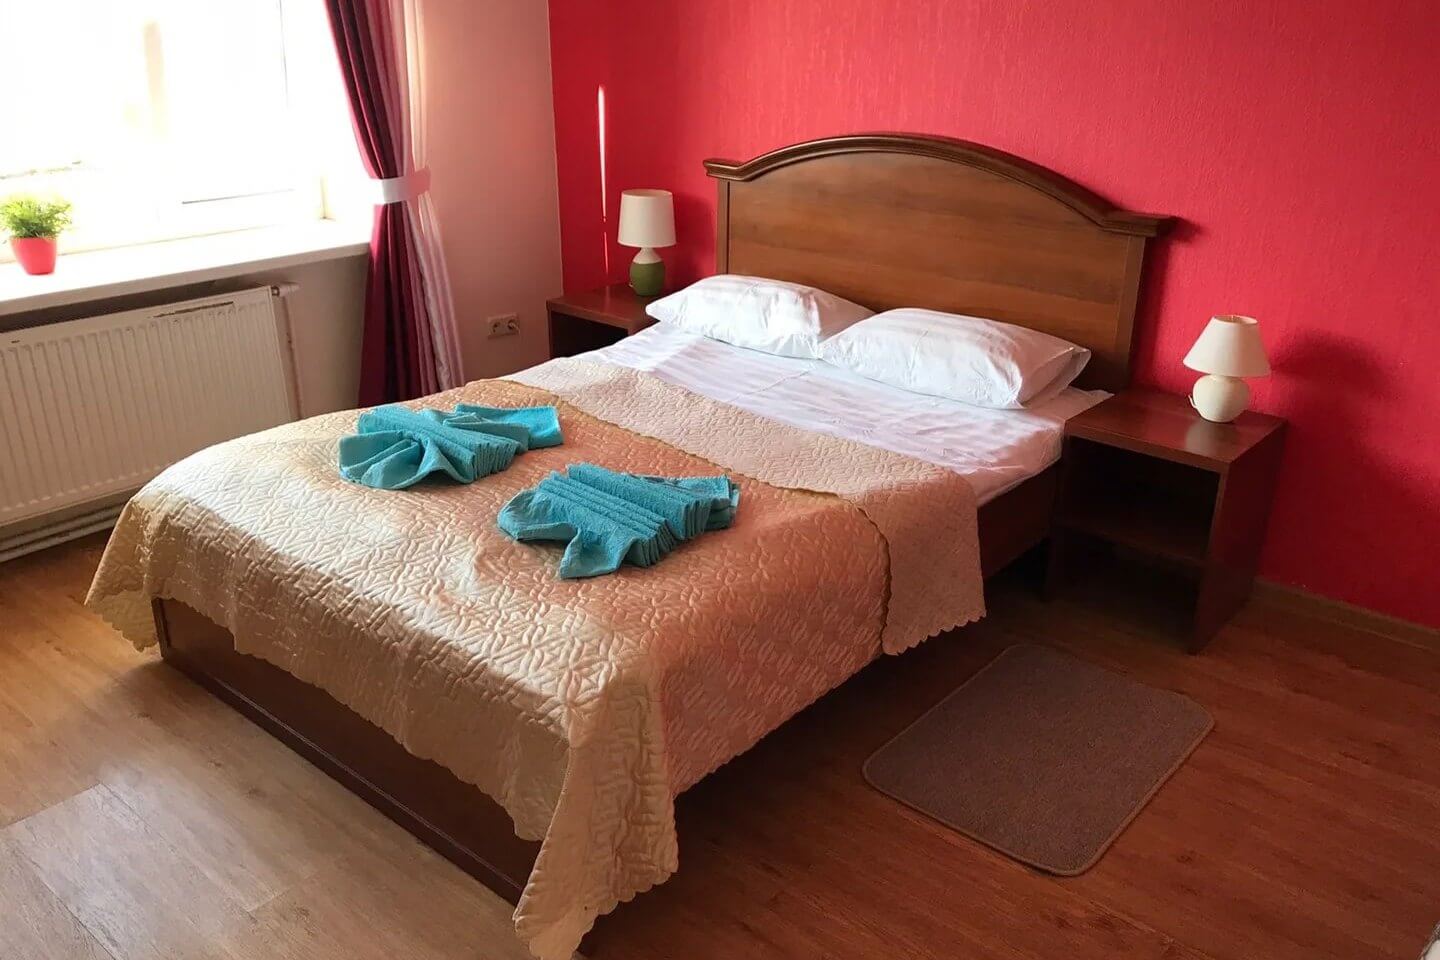 Кровать. Розовая стена. Голубые полотенца.